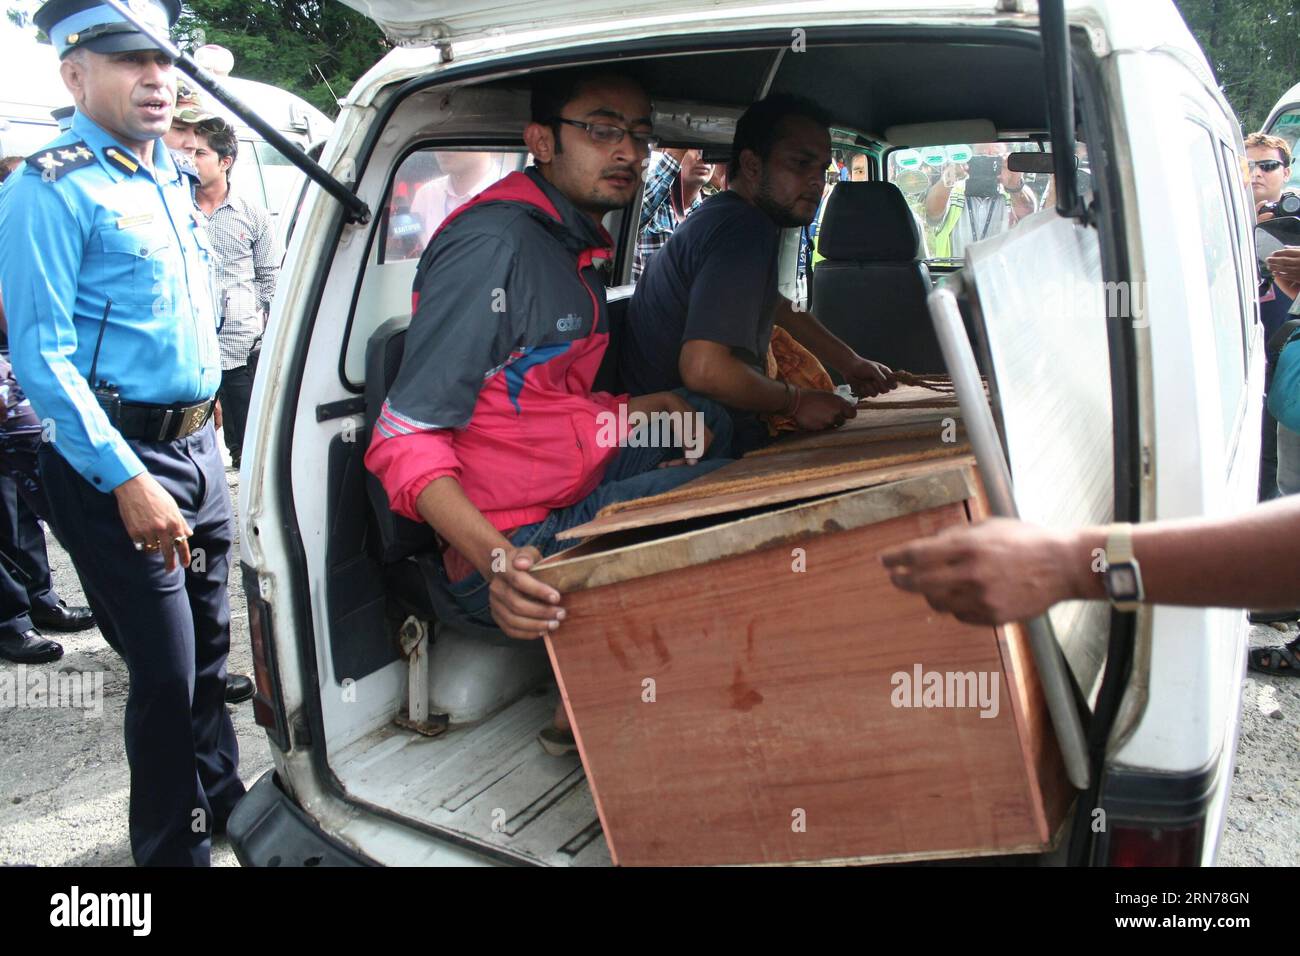 (150825) -- KATMANDOU, 25 août 2015 -- le cadavre du surintendant principal de la police (SSP) Laxman Neupane tué lors d'un affrontement avec des manifestants à Tikapur est amené à la capitale pour une nouvelle procession funéraire à Katmandou, Népal, le 25 août 2015. Le nombre de morts dans le violent affrontement qui a éclaté au sujet du fédéralisme proposé dans l'extrême ouest du Népal a atteint 20, ont rapporté les médias locaux. NÉPAL-KATMANDOU-CLASH-POLICE SunilxSharma PUBLICATIONxNOTxINxCHN 150825 Katmandou août 25 2015 le cadavre du surintendant principal de la police SSP LAXMAN Neupane TUÉ dans un affrontement avec des manifestants À IS BROUG Banque D'Images